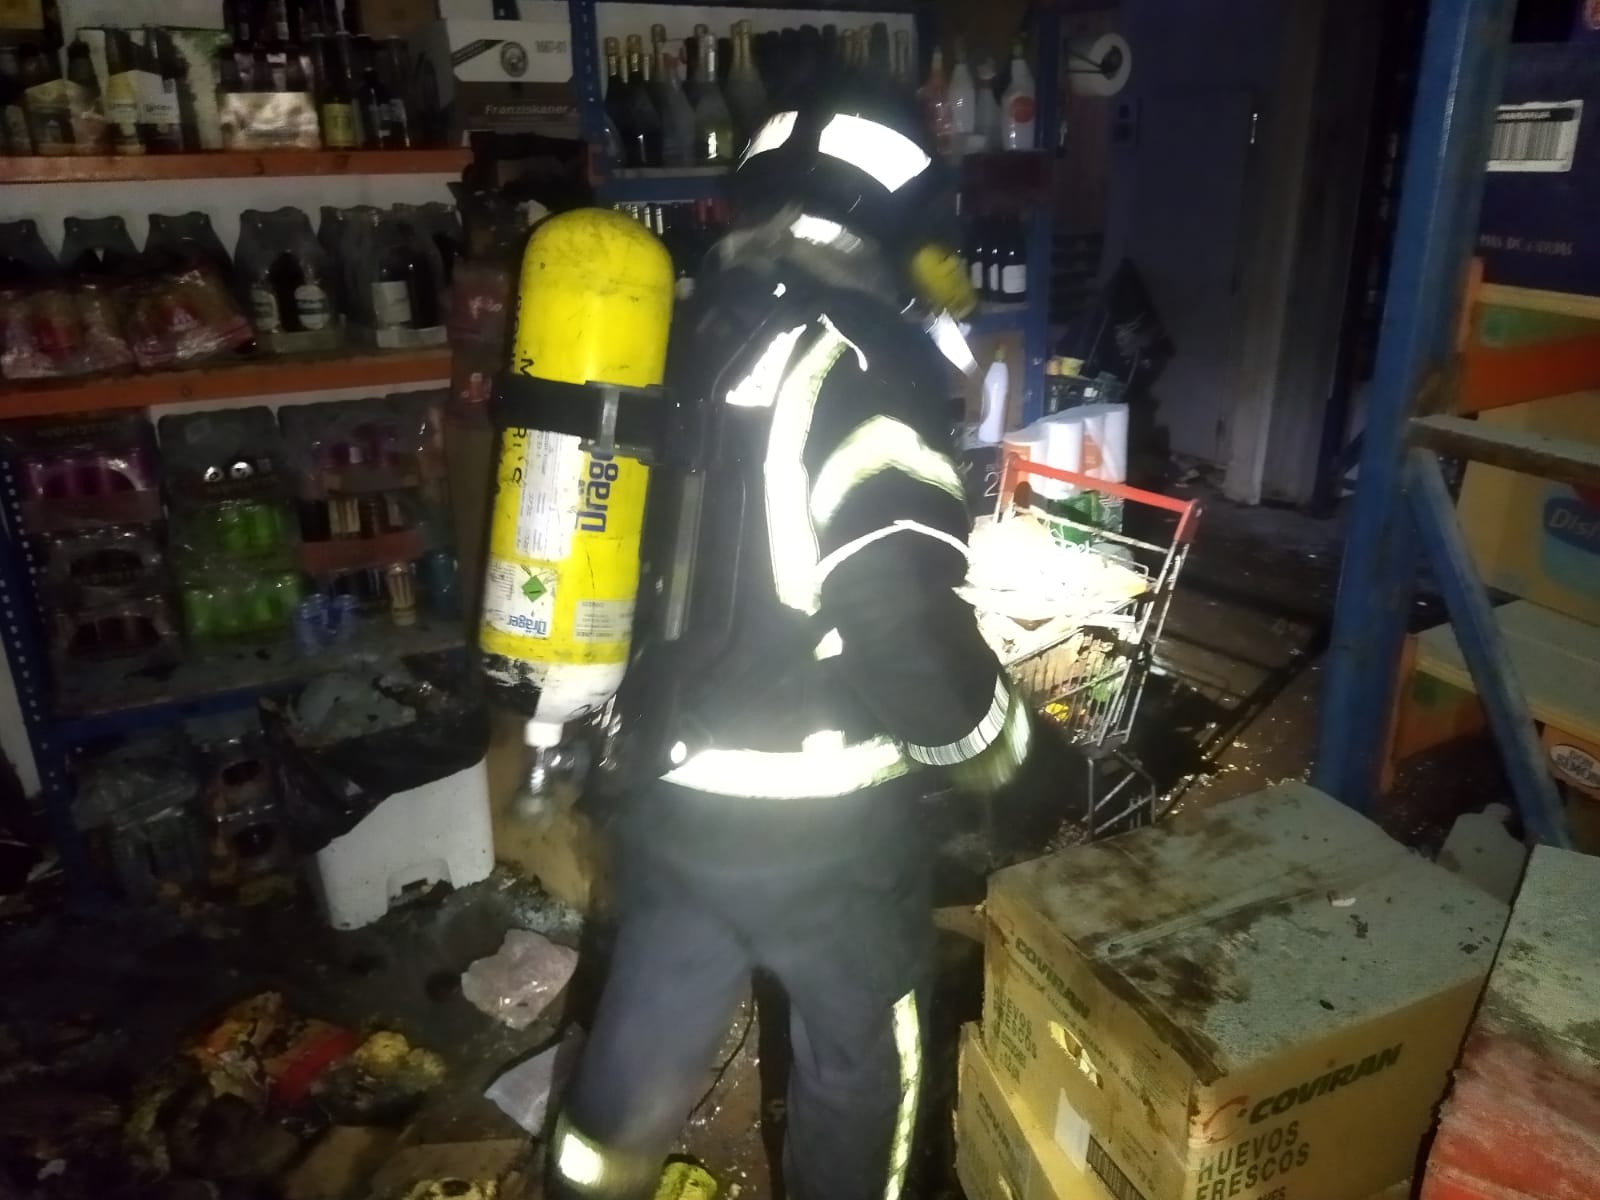 Los Bomberos de Ponferrada ventilaron y localizaron los focos del incendio en el almacén de La Peregrina./Ayto. ponferrada